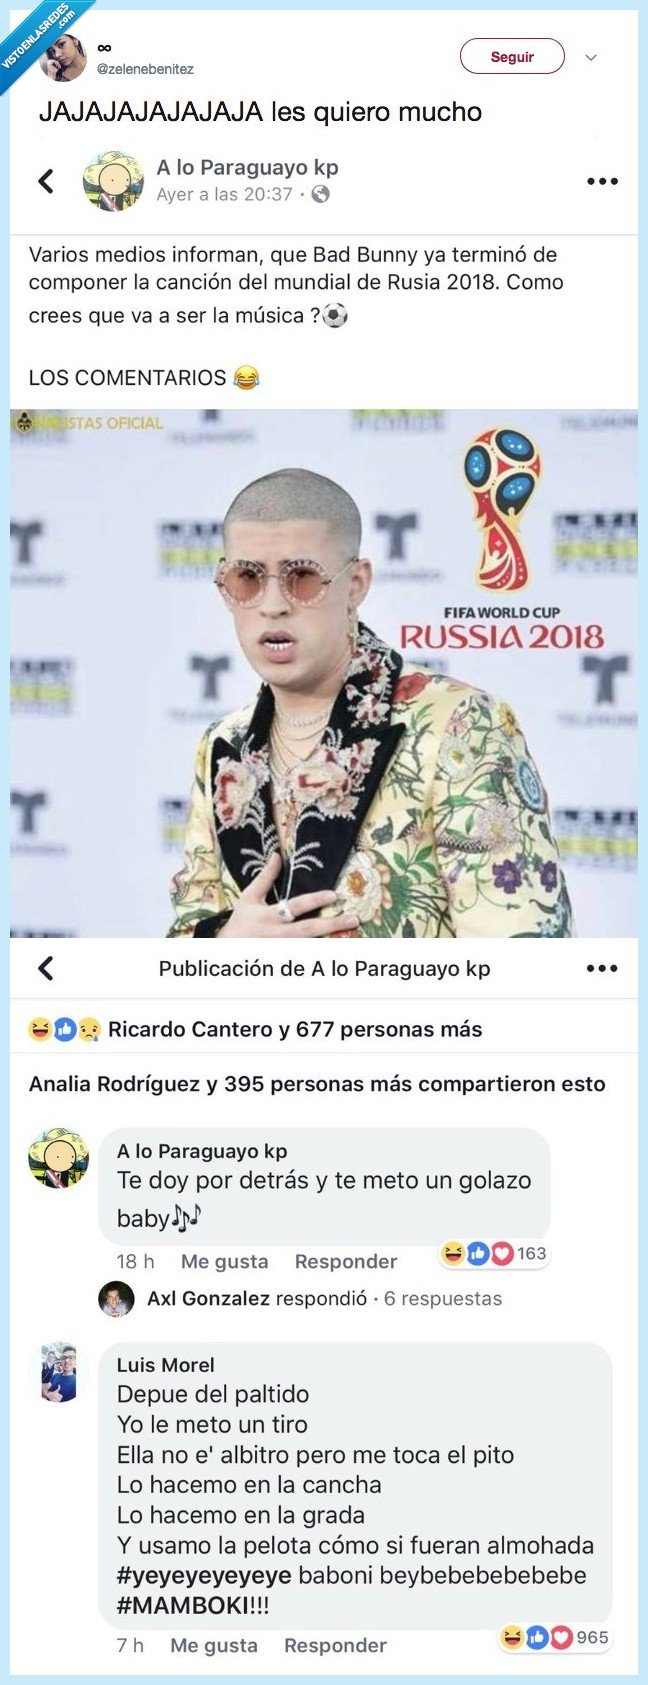 483127 - Se rumorea que Bad Bunny será el cantante del Mundial Rusia 2018 y las bromas están servidas en la red 